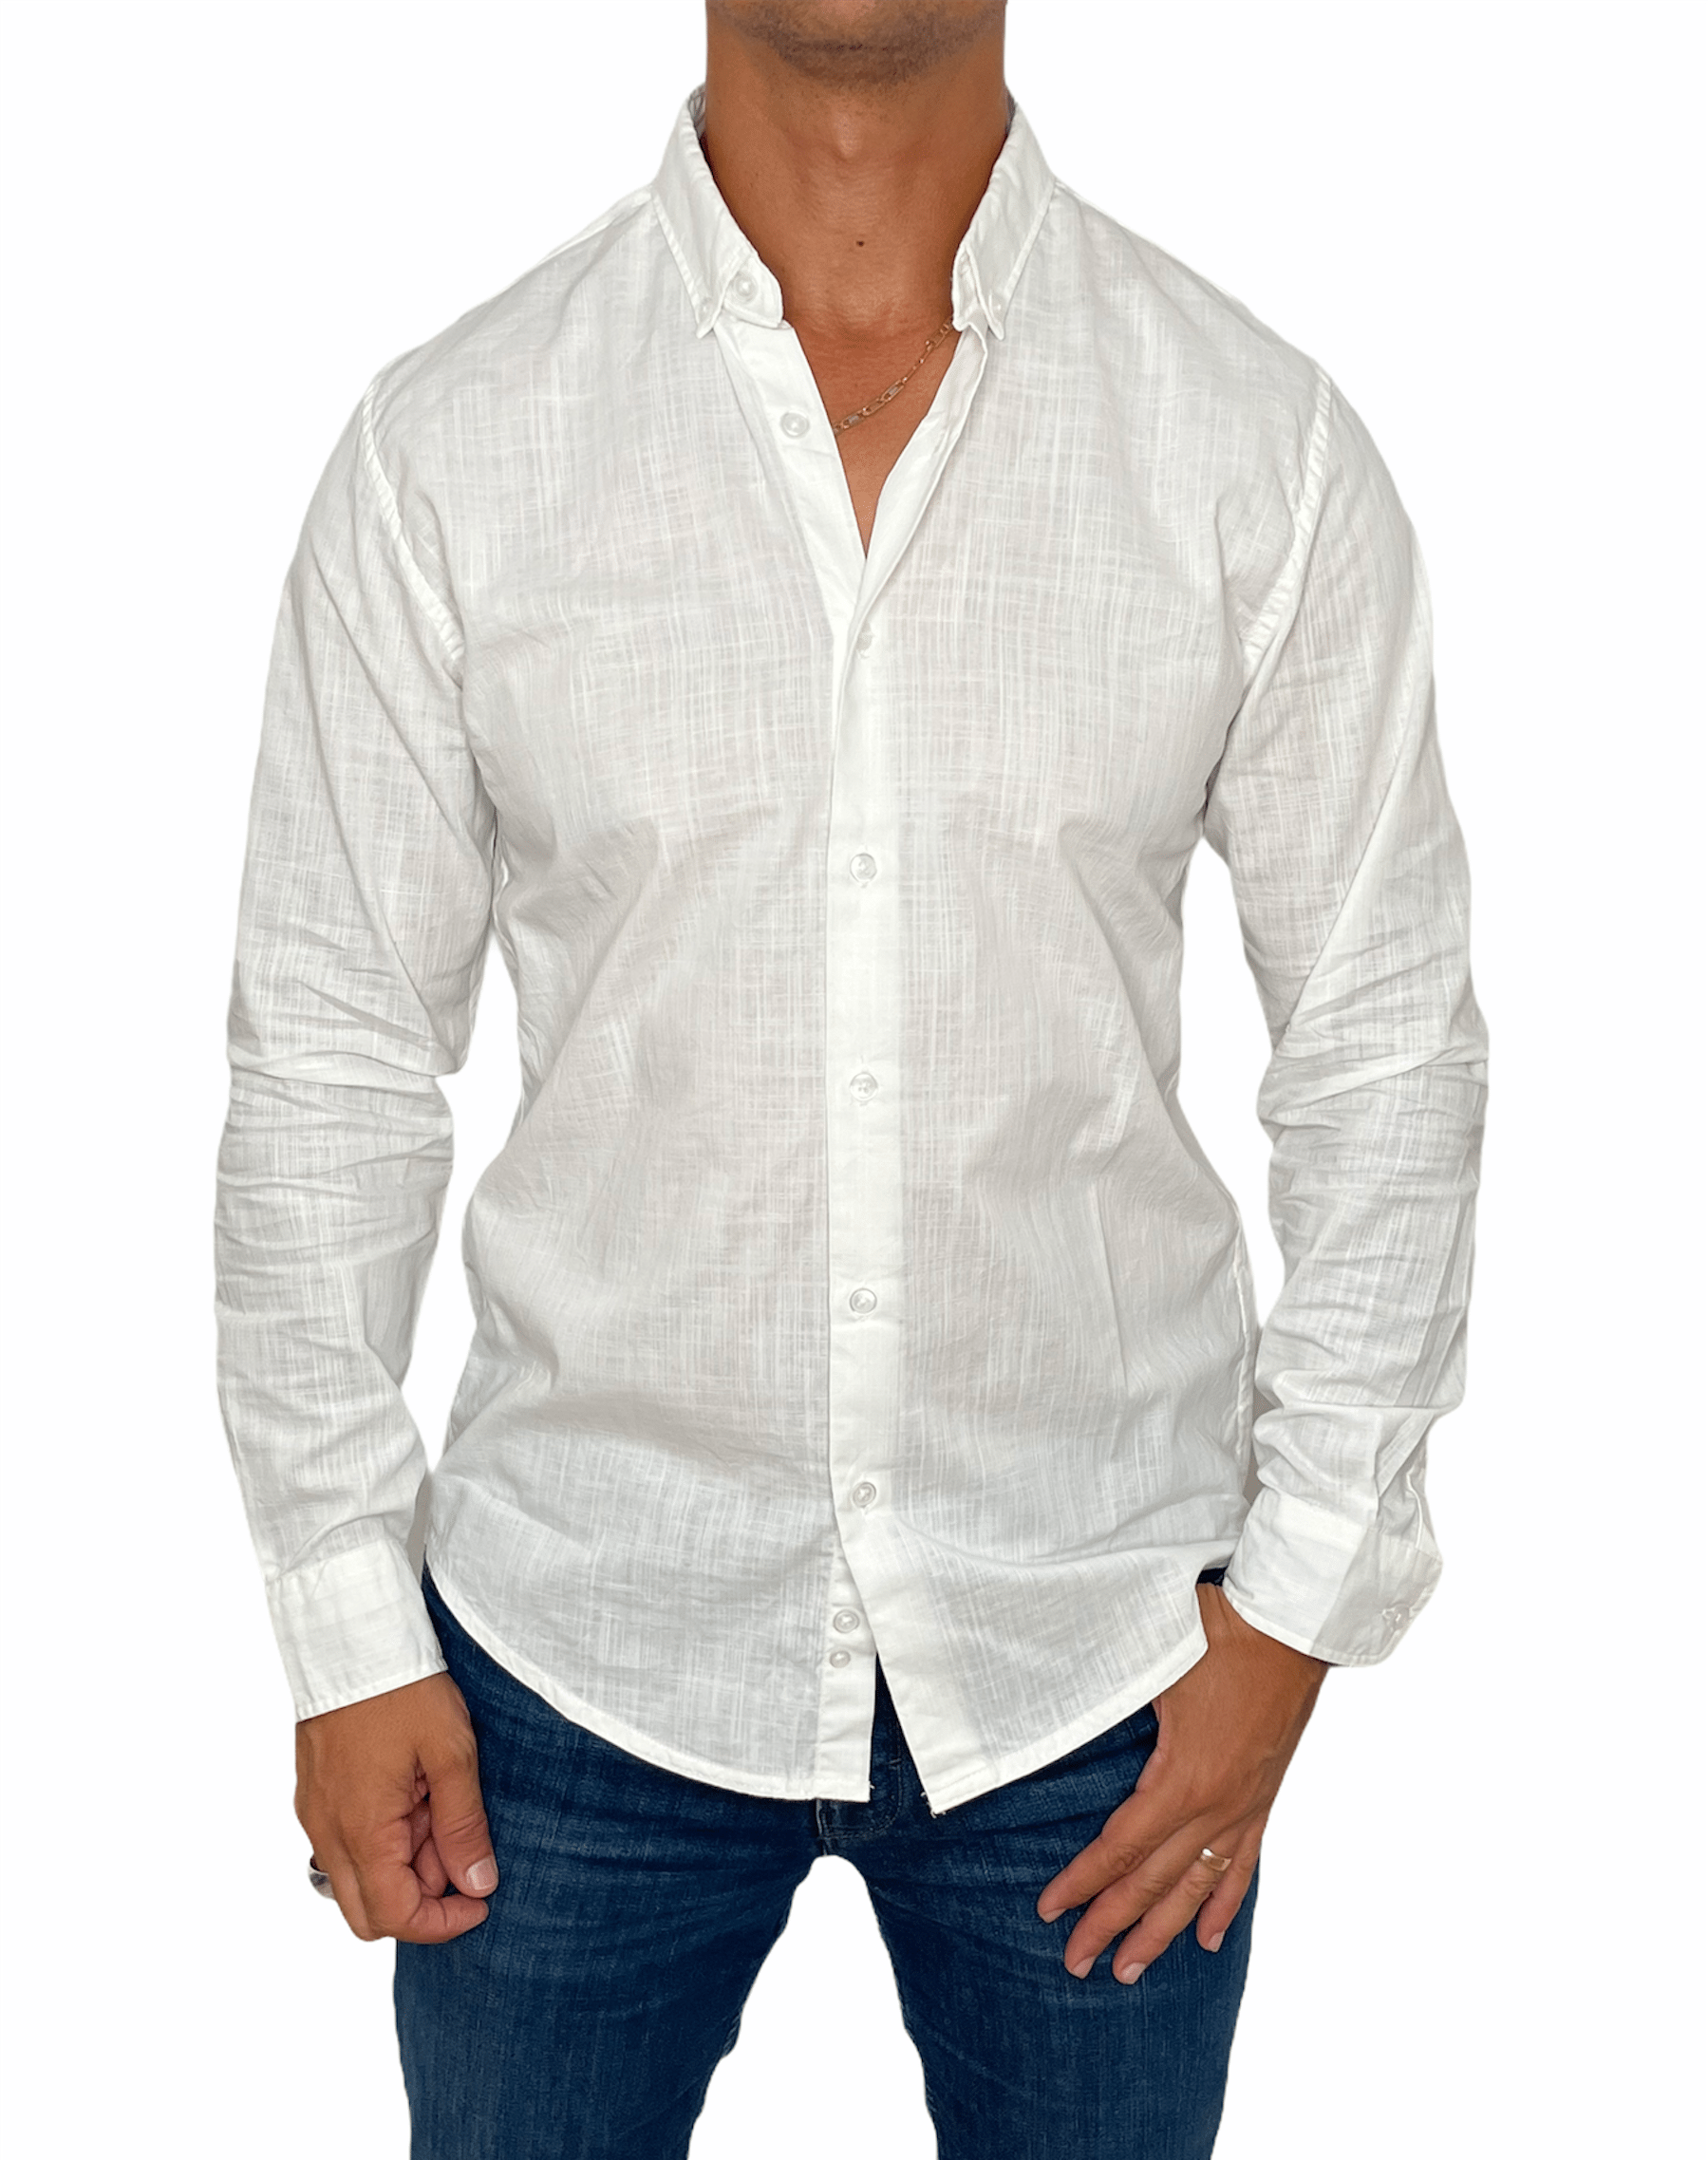 ElOutlet Shirts White Linen Shirt